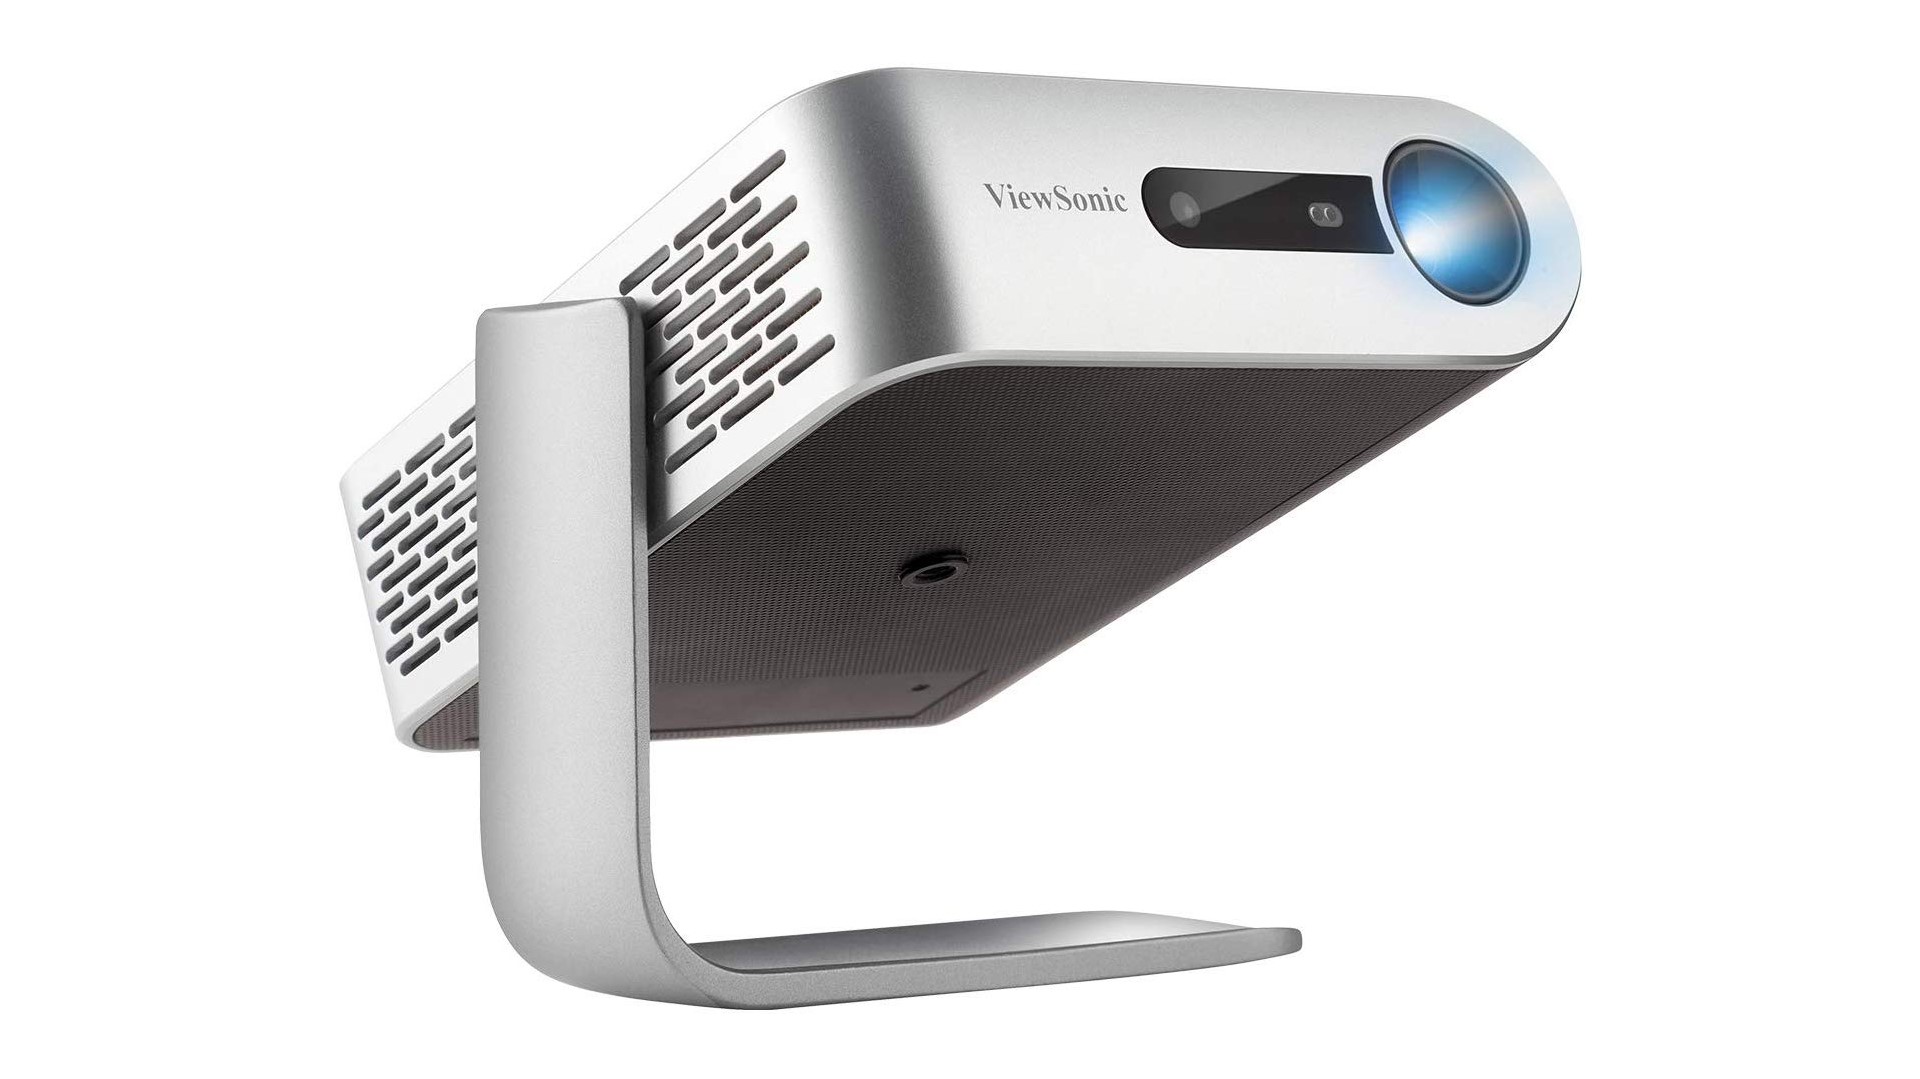 Viewsonic M1 mini projector